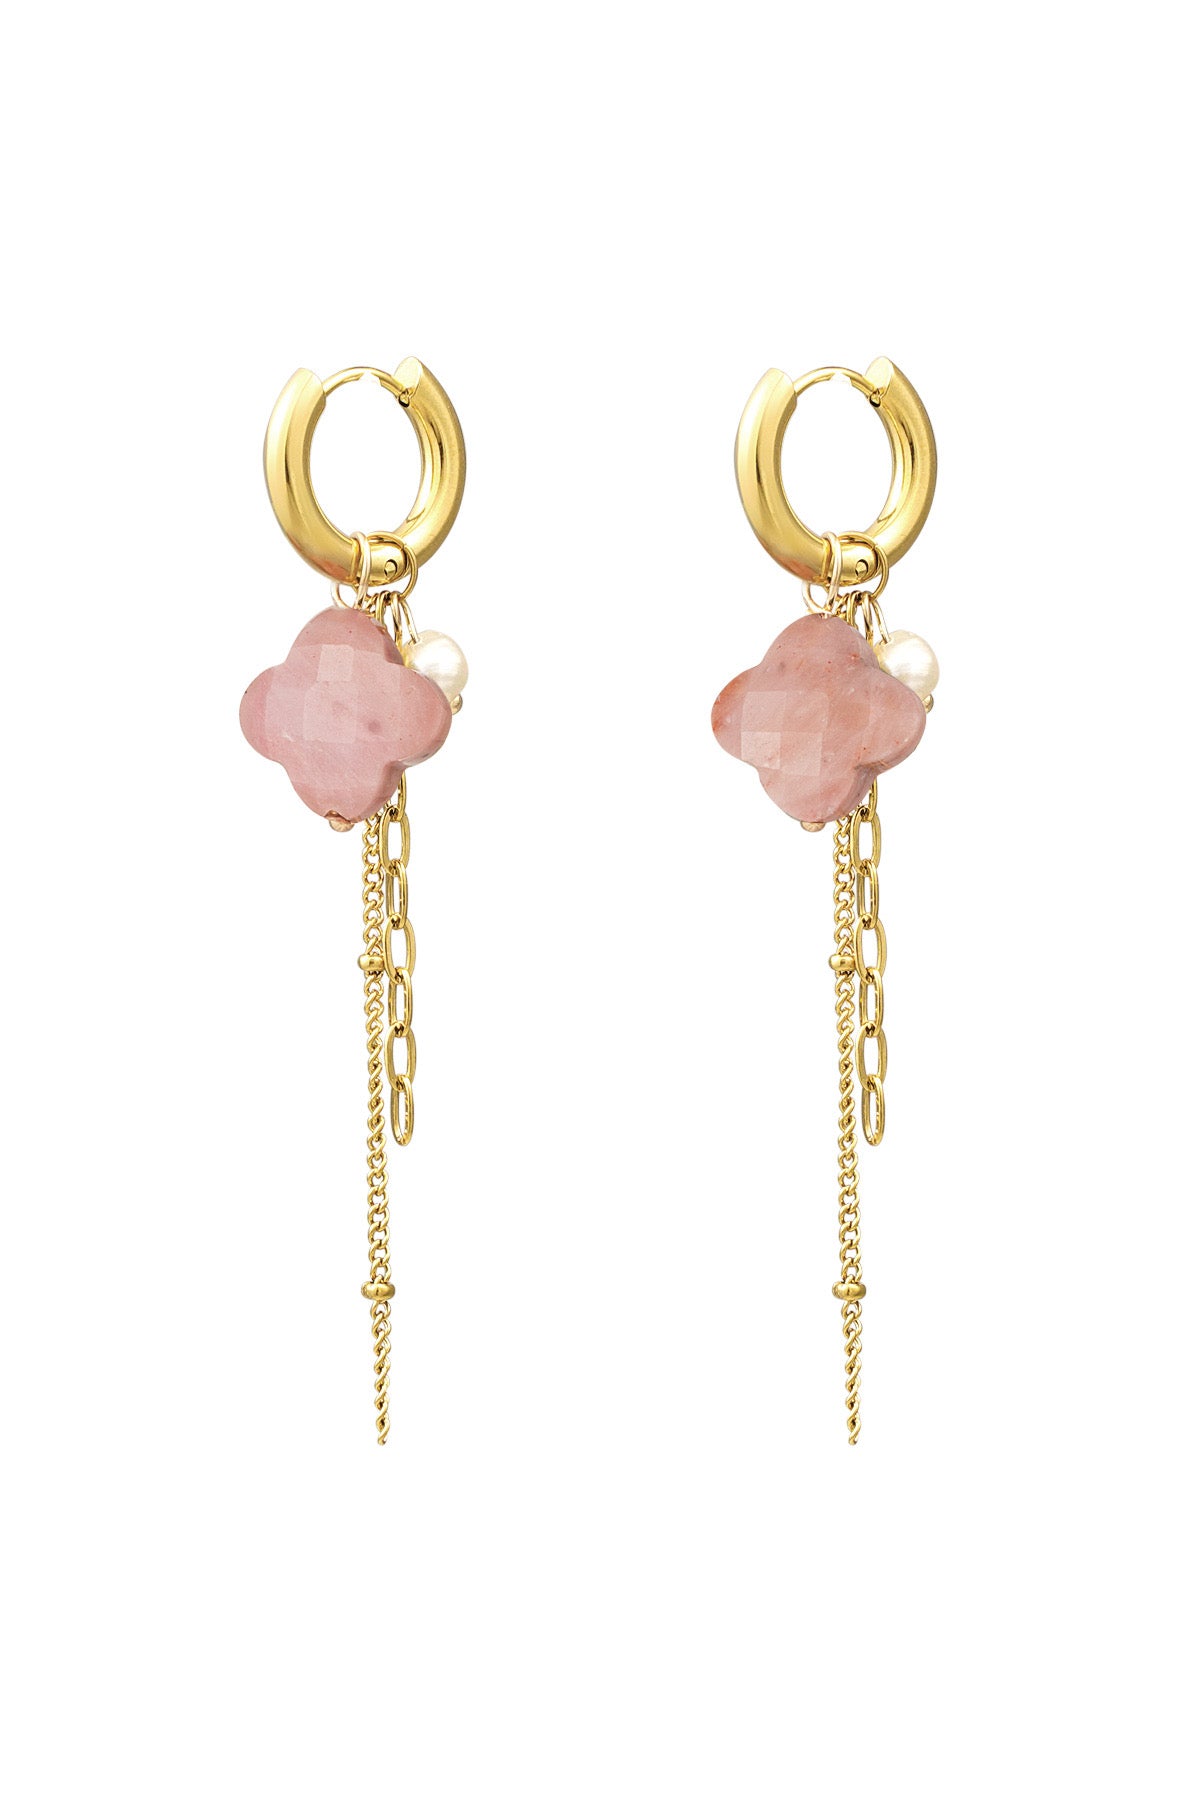 Clover Chain Hoop Earrings - Pale Pink